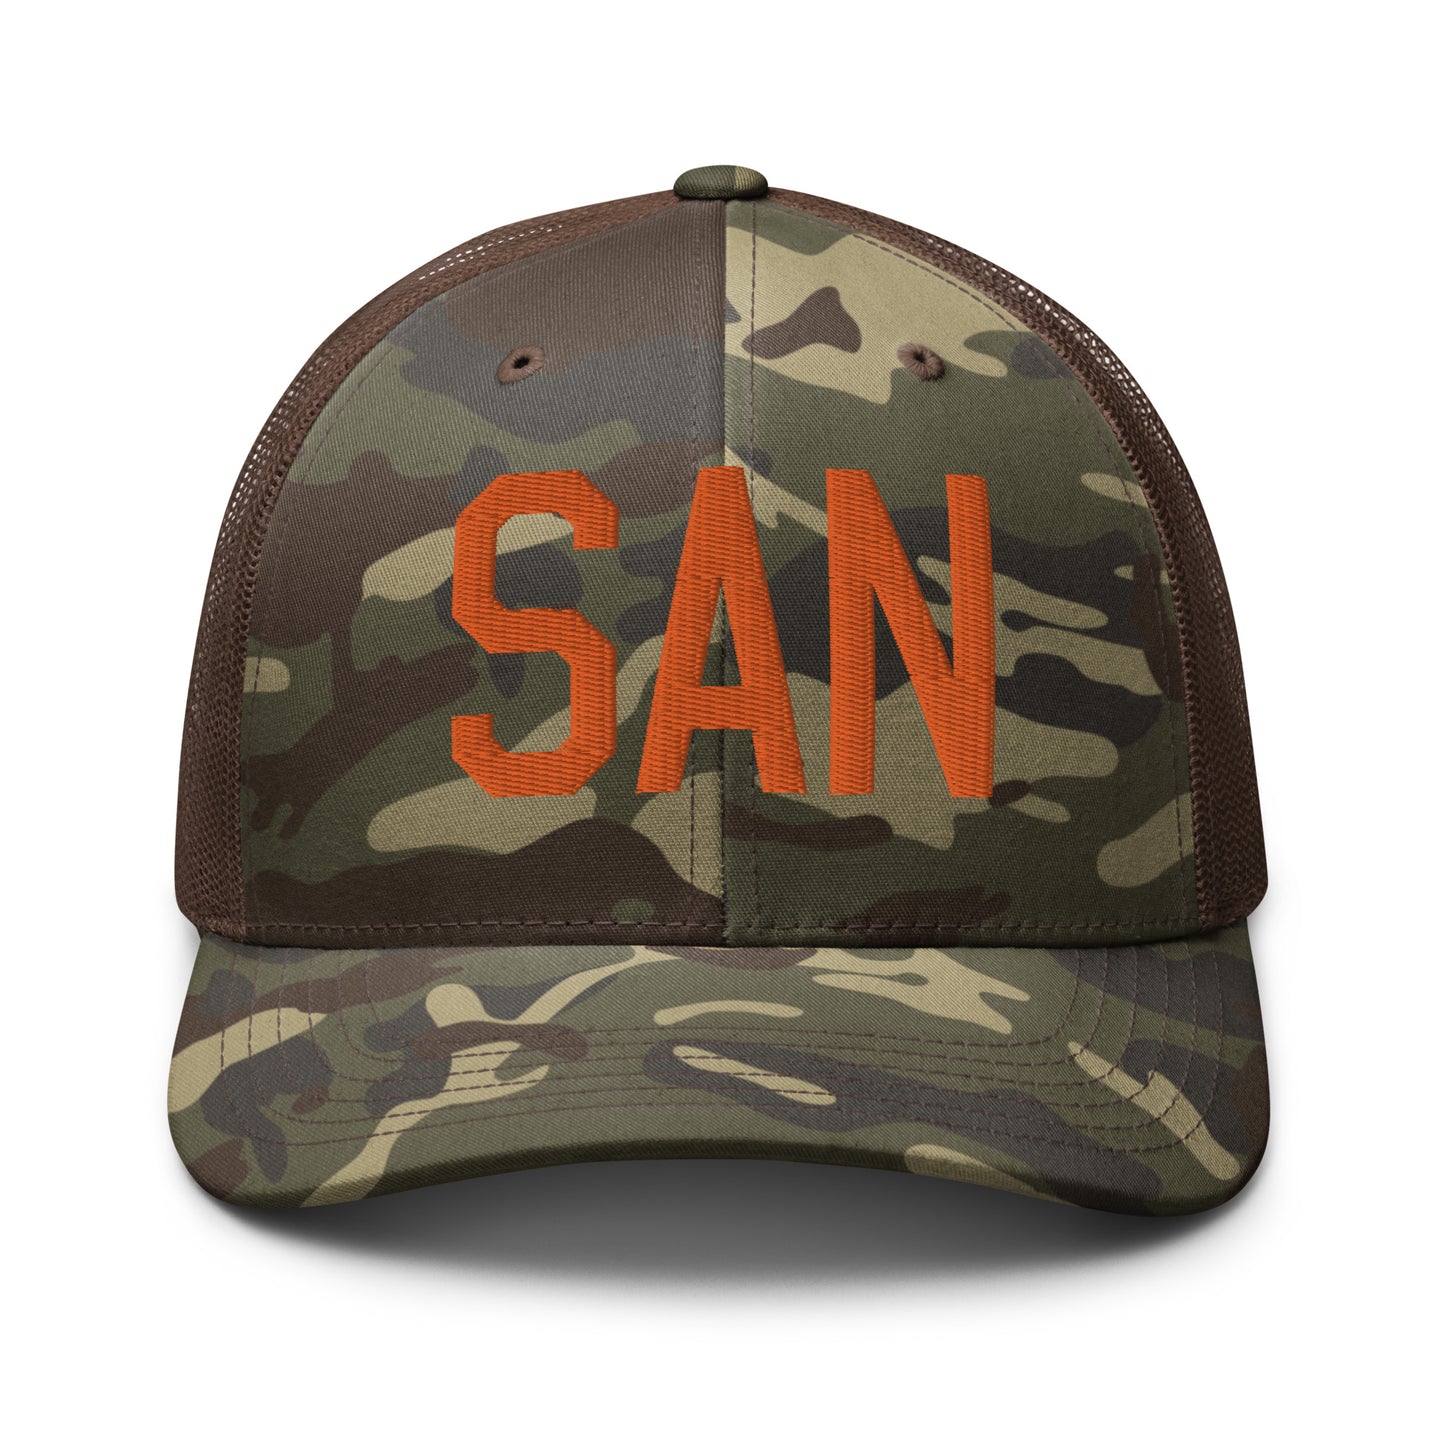 Airport Code Camouflage Trucker Hat - Orange • SAN San Diego • YHM Designs - Image 13